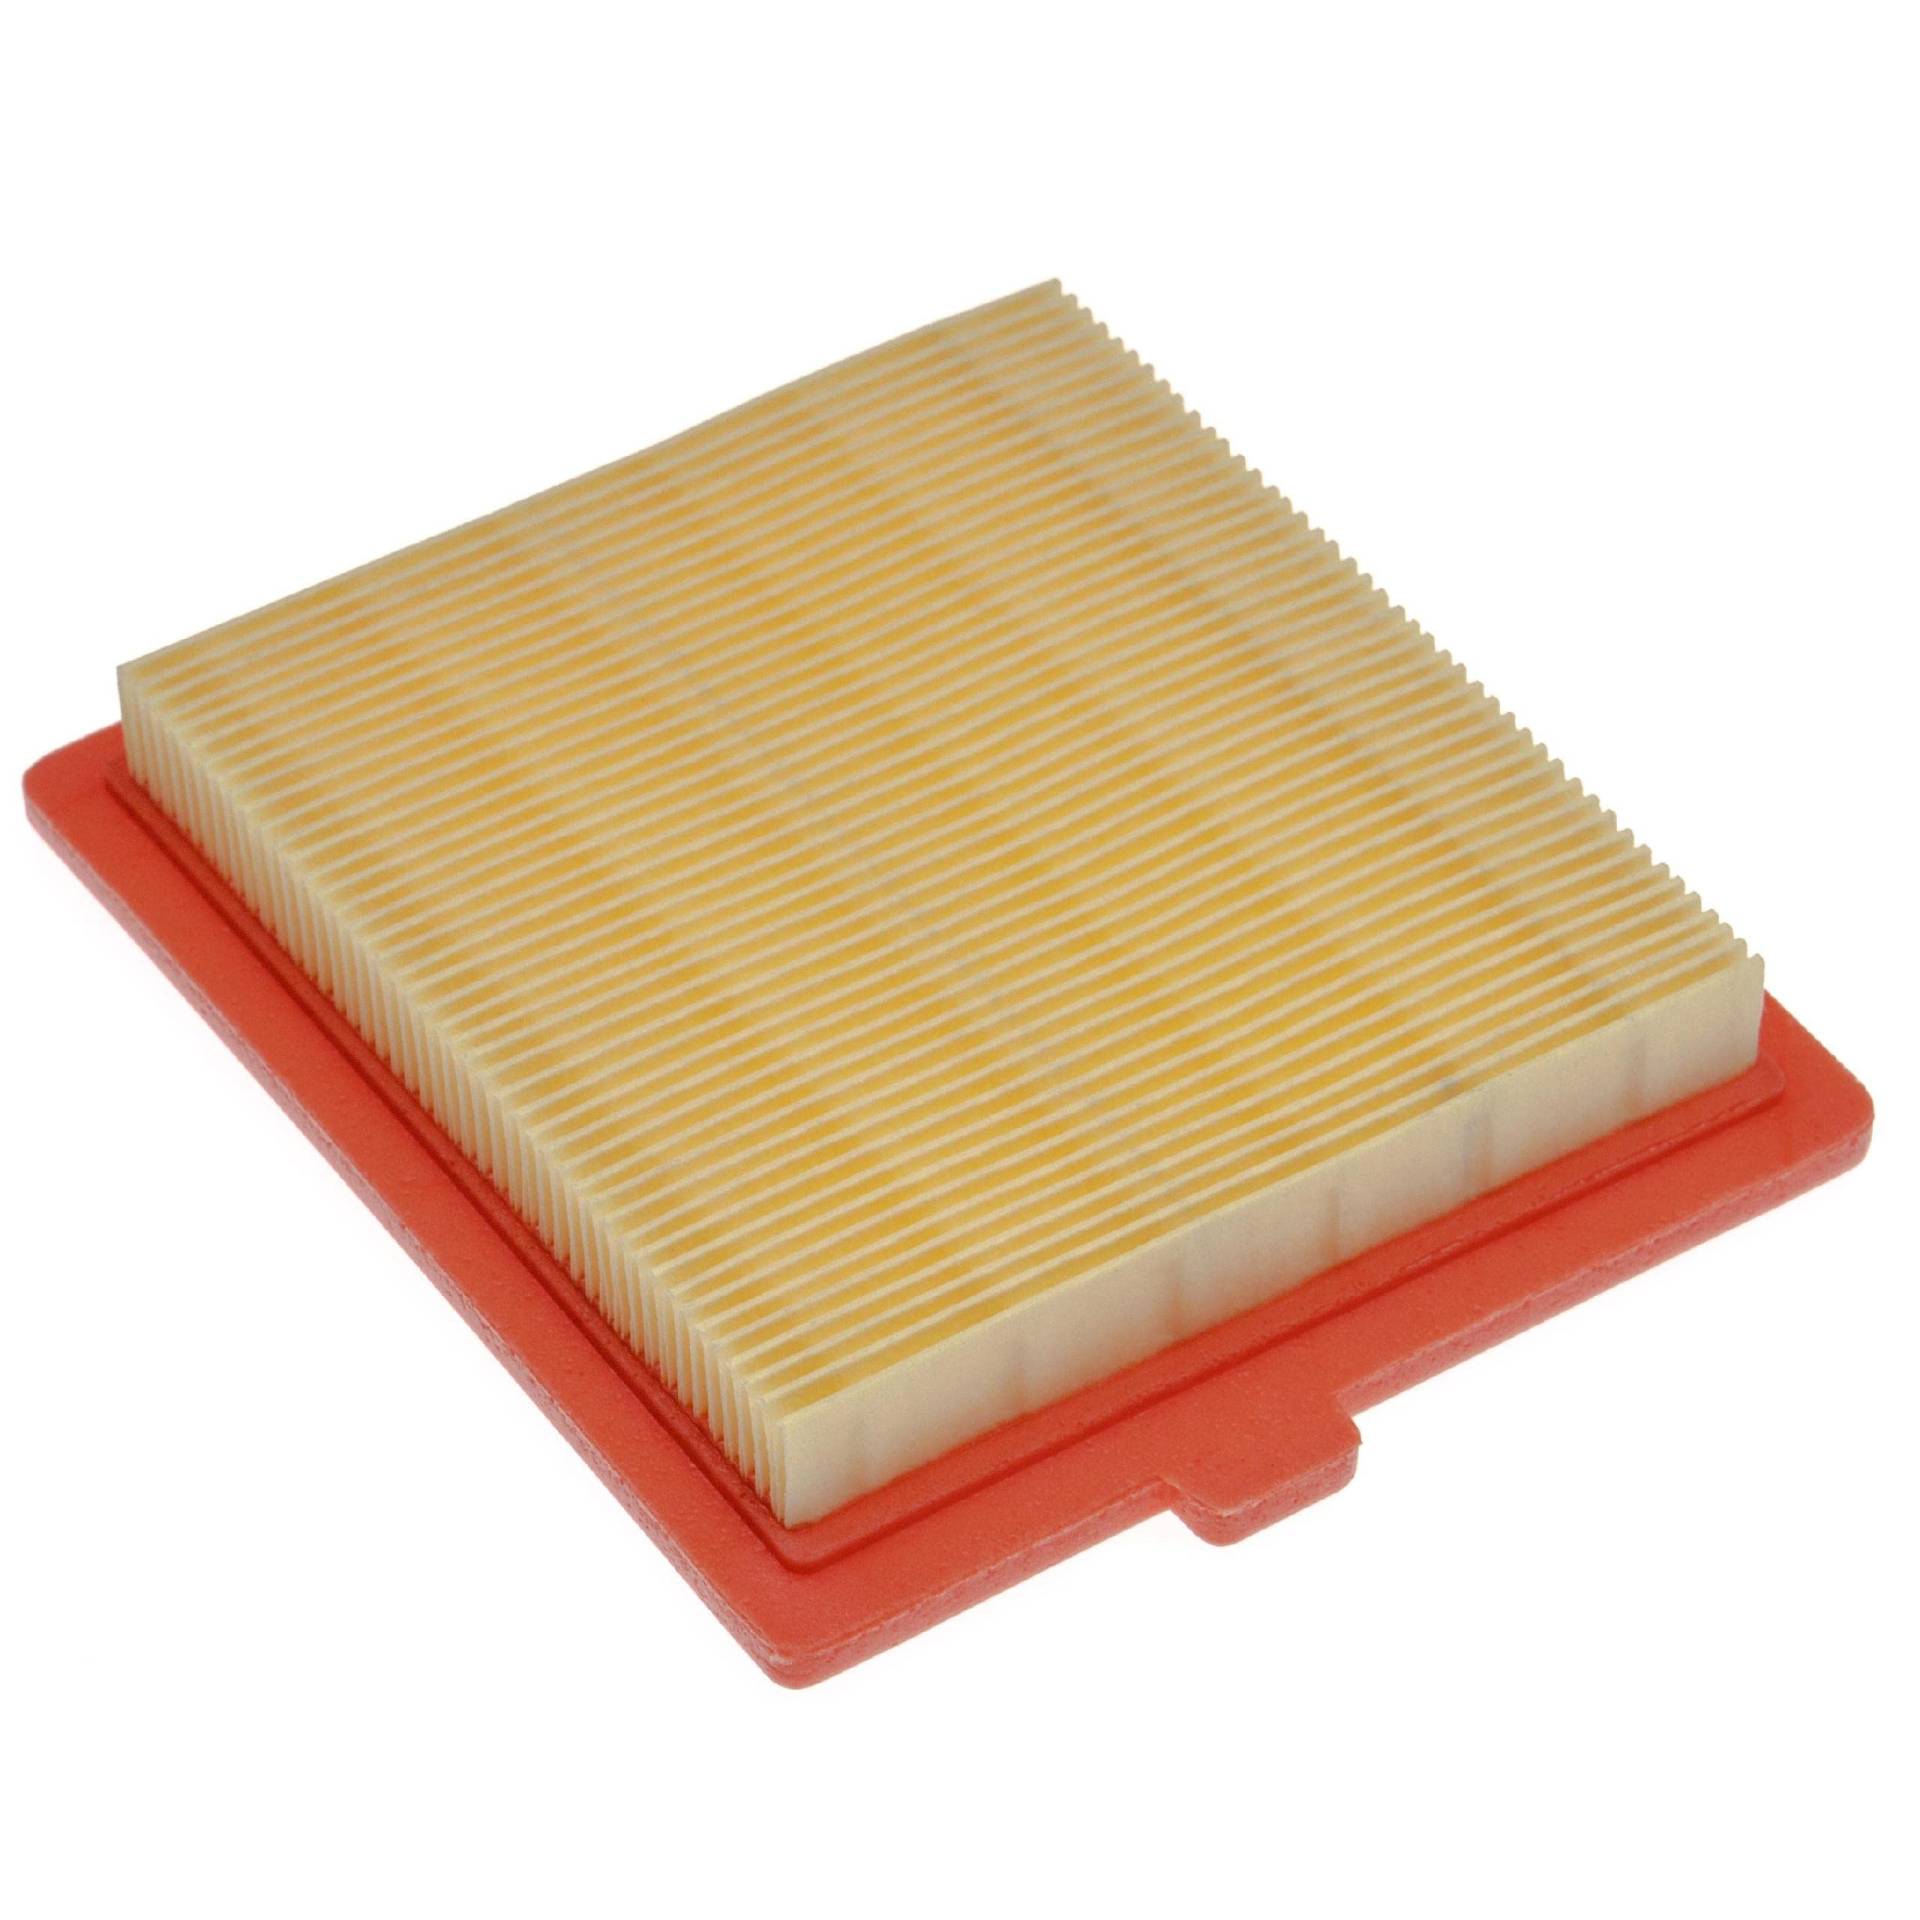 vhbw Ersatzfilter (1x Luftfilter) kompatibel mit Castelgarden/GGP/STIGA RM45, RV45 Rasenmäher, 12,2 x 10,8 x 2 cm, Gelb, Orange von vhbw